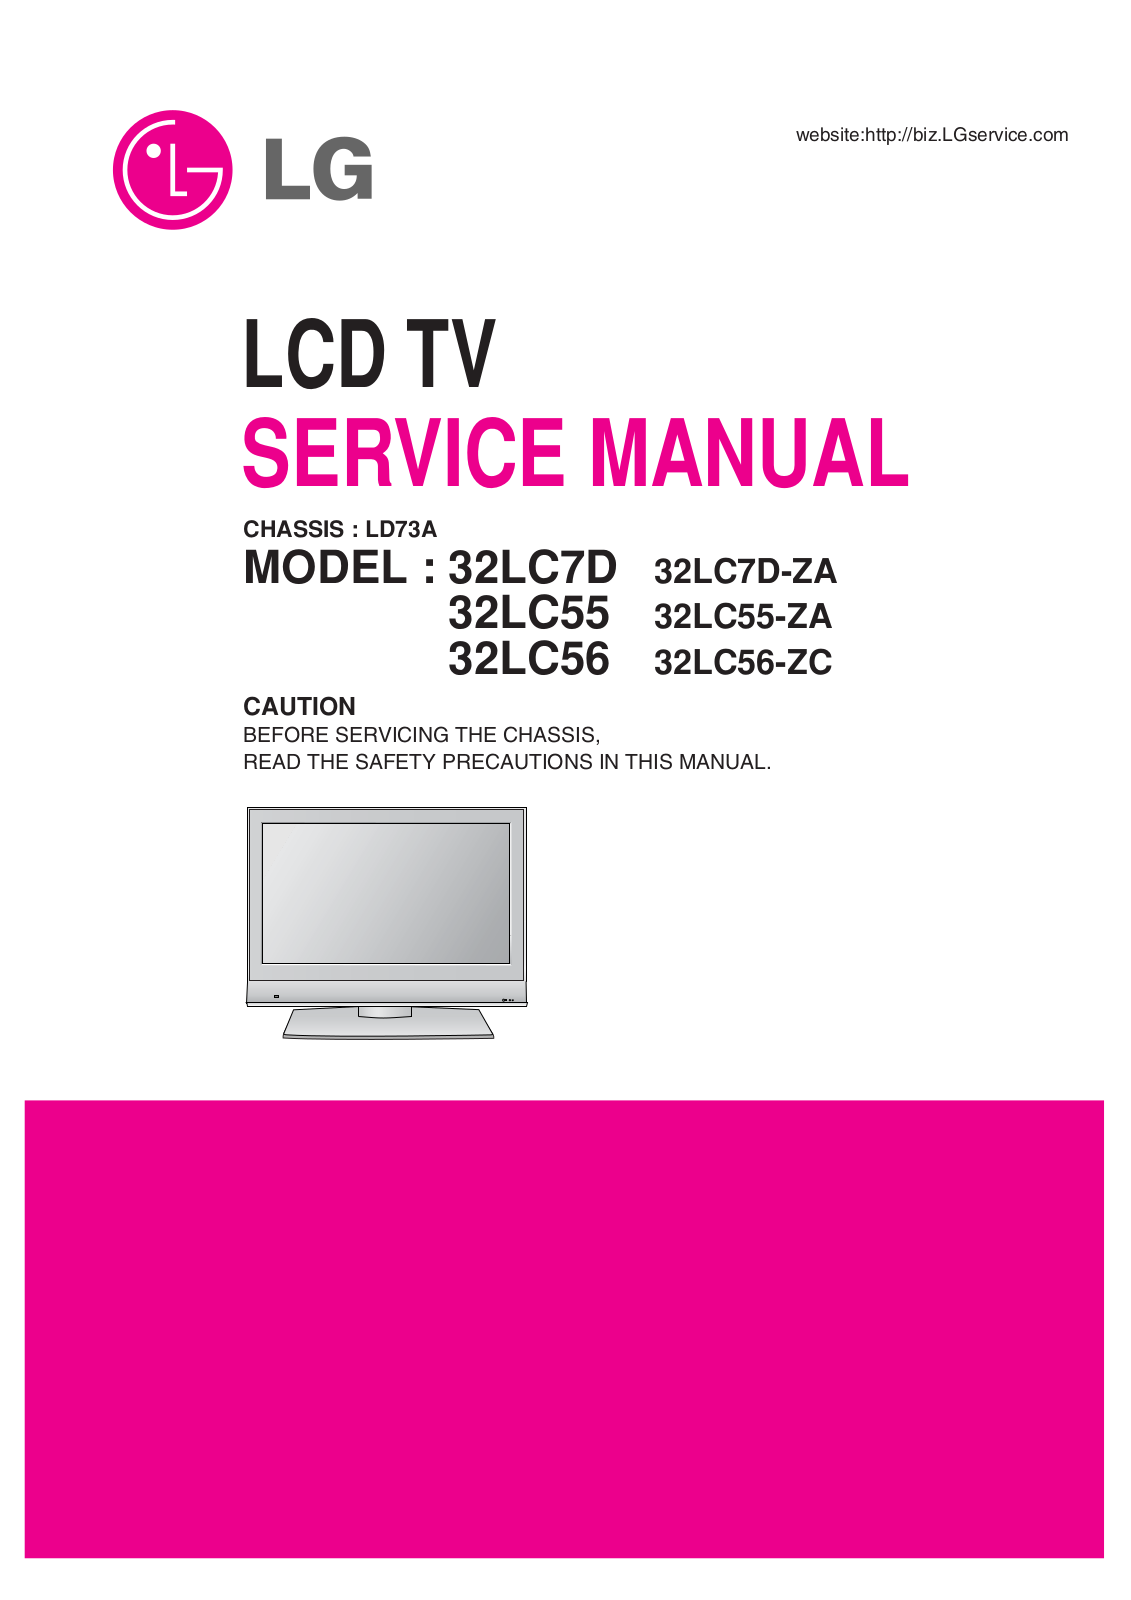 LG 32LC56-ZC, 32LC56, 32LC55-ZA, 32LC55, 32LC7D-ZA Service Manual